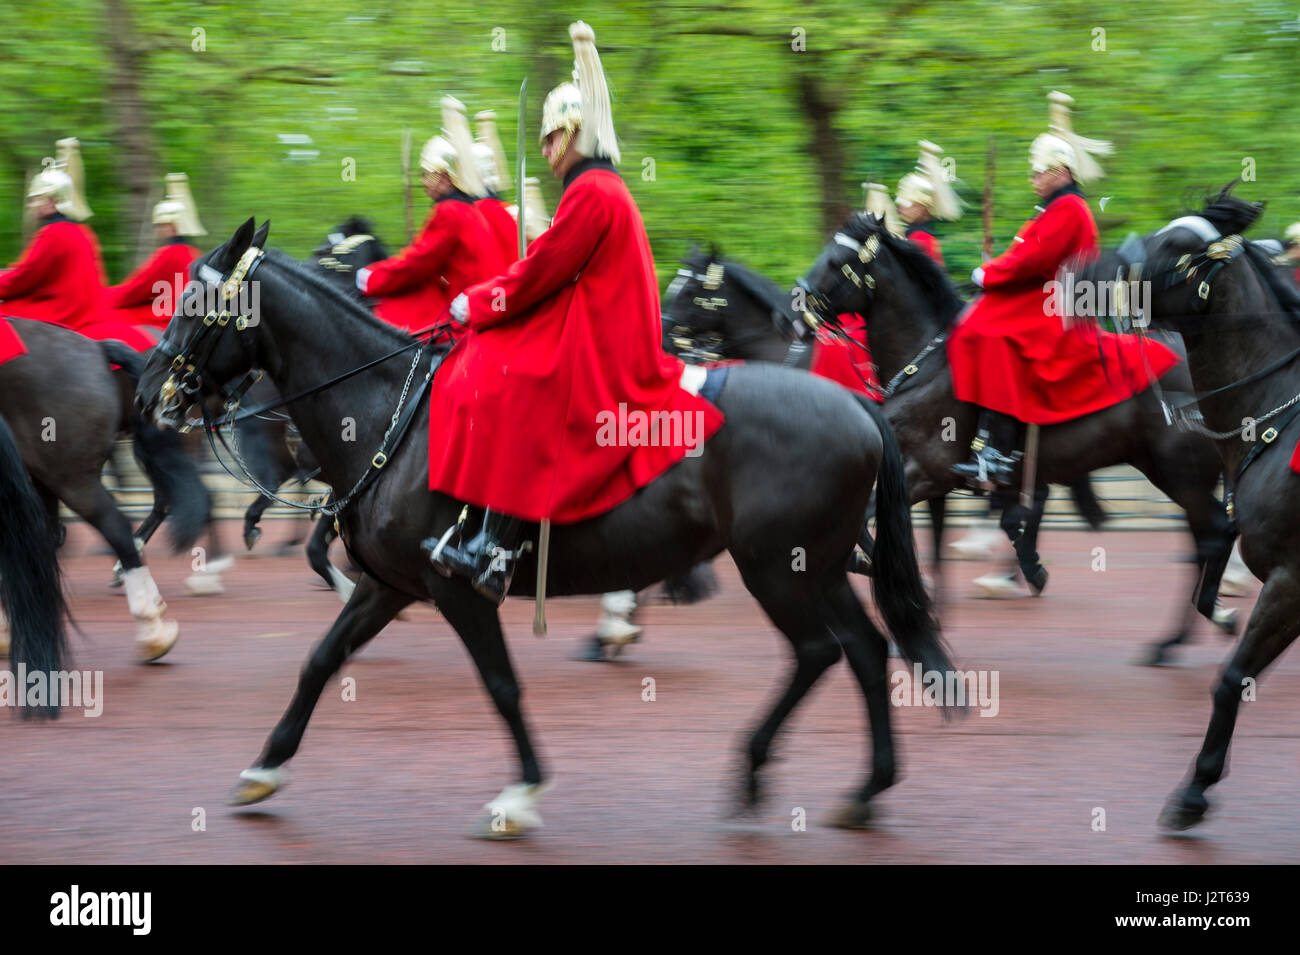 Londra - 18 Maggio 2016: montato reggimento della regina guardie in rosso cappotti passano in motion blur sul Mall durante un royal Trooping la processione del colore. Foto Stock